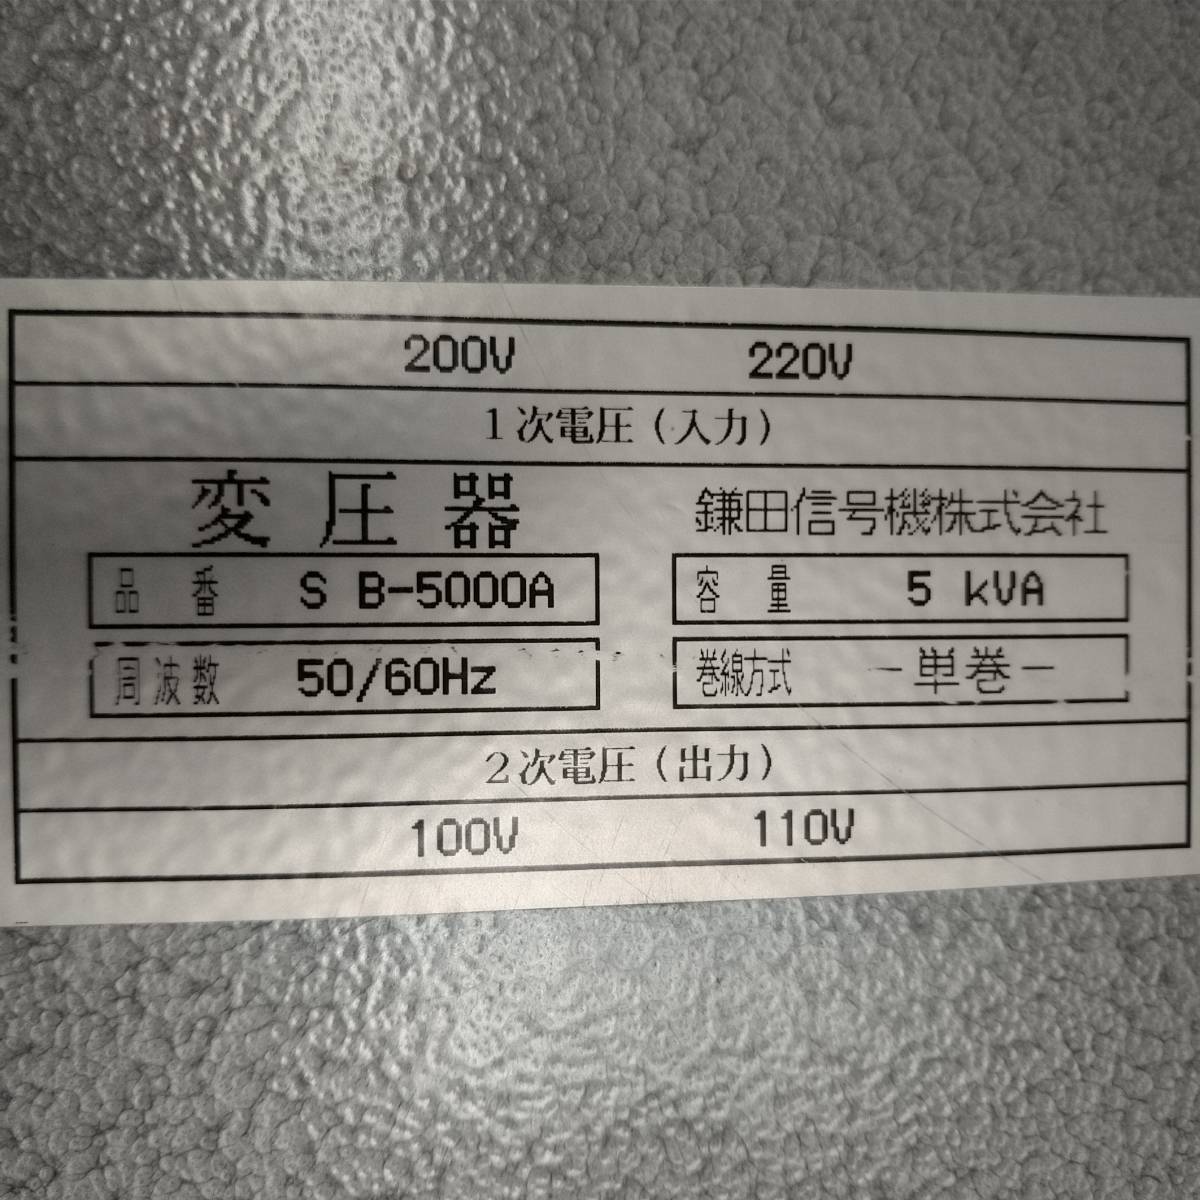 ダウントランス 入力200V、220V を100V 鎌田信号機械株式会社